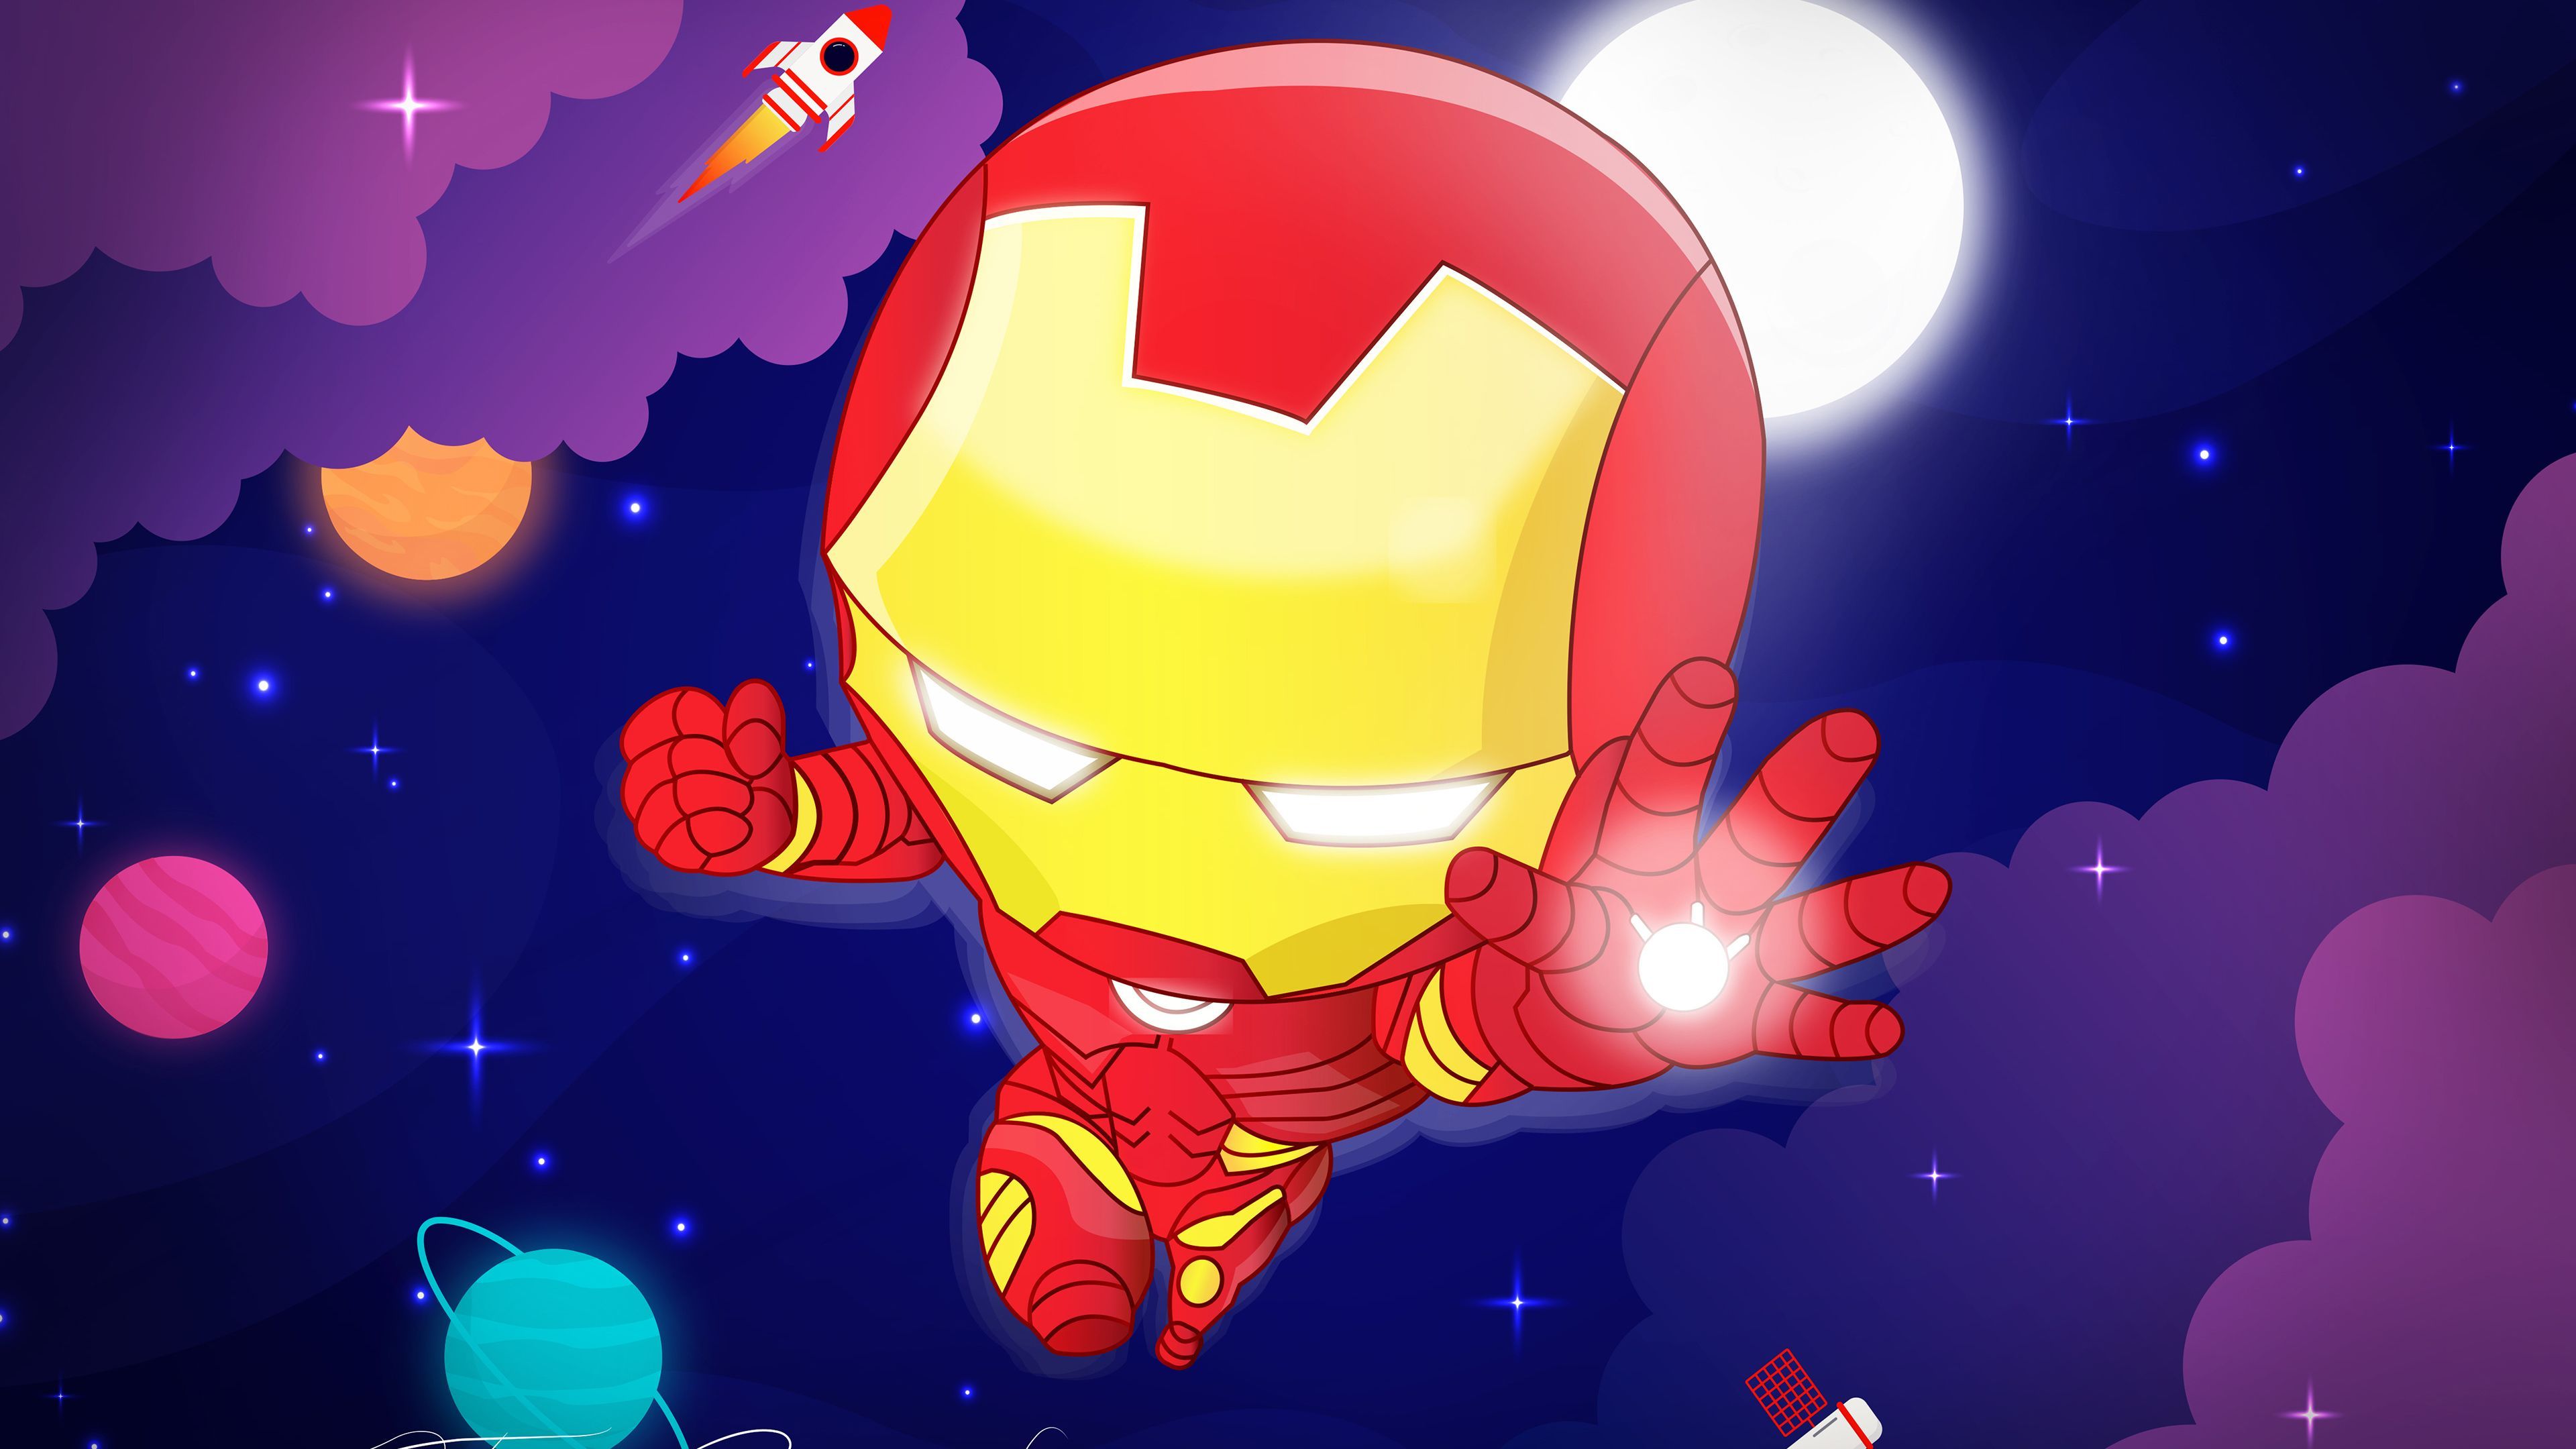 Chibi Iron Man 4k Superheroes Wallpaper, Iron Man Wallpaper, Hd Wallpaper, Digital Art Wallpaper, Behance Wallpap. Iron Man Wallpaper, Iron Man, Man Wallpaper